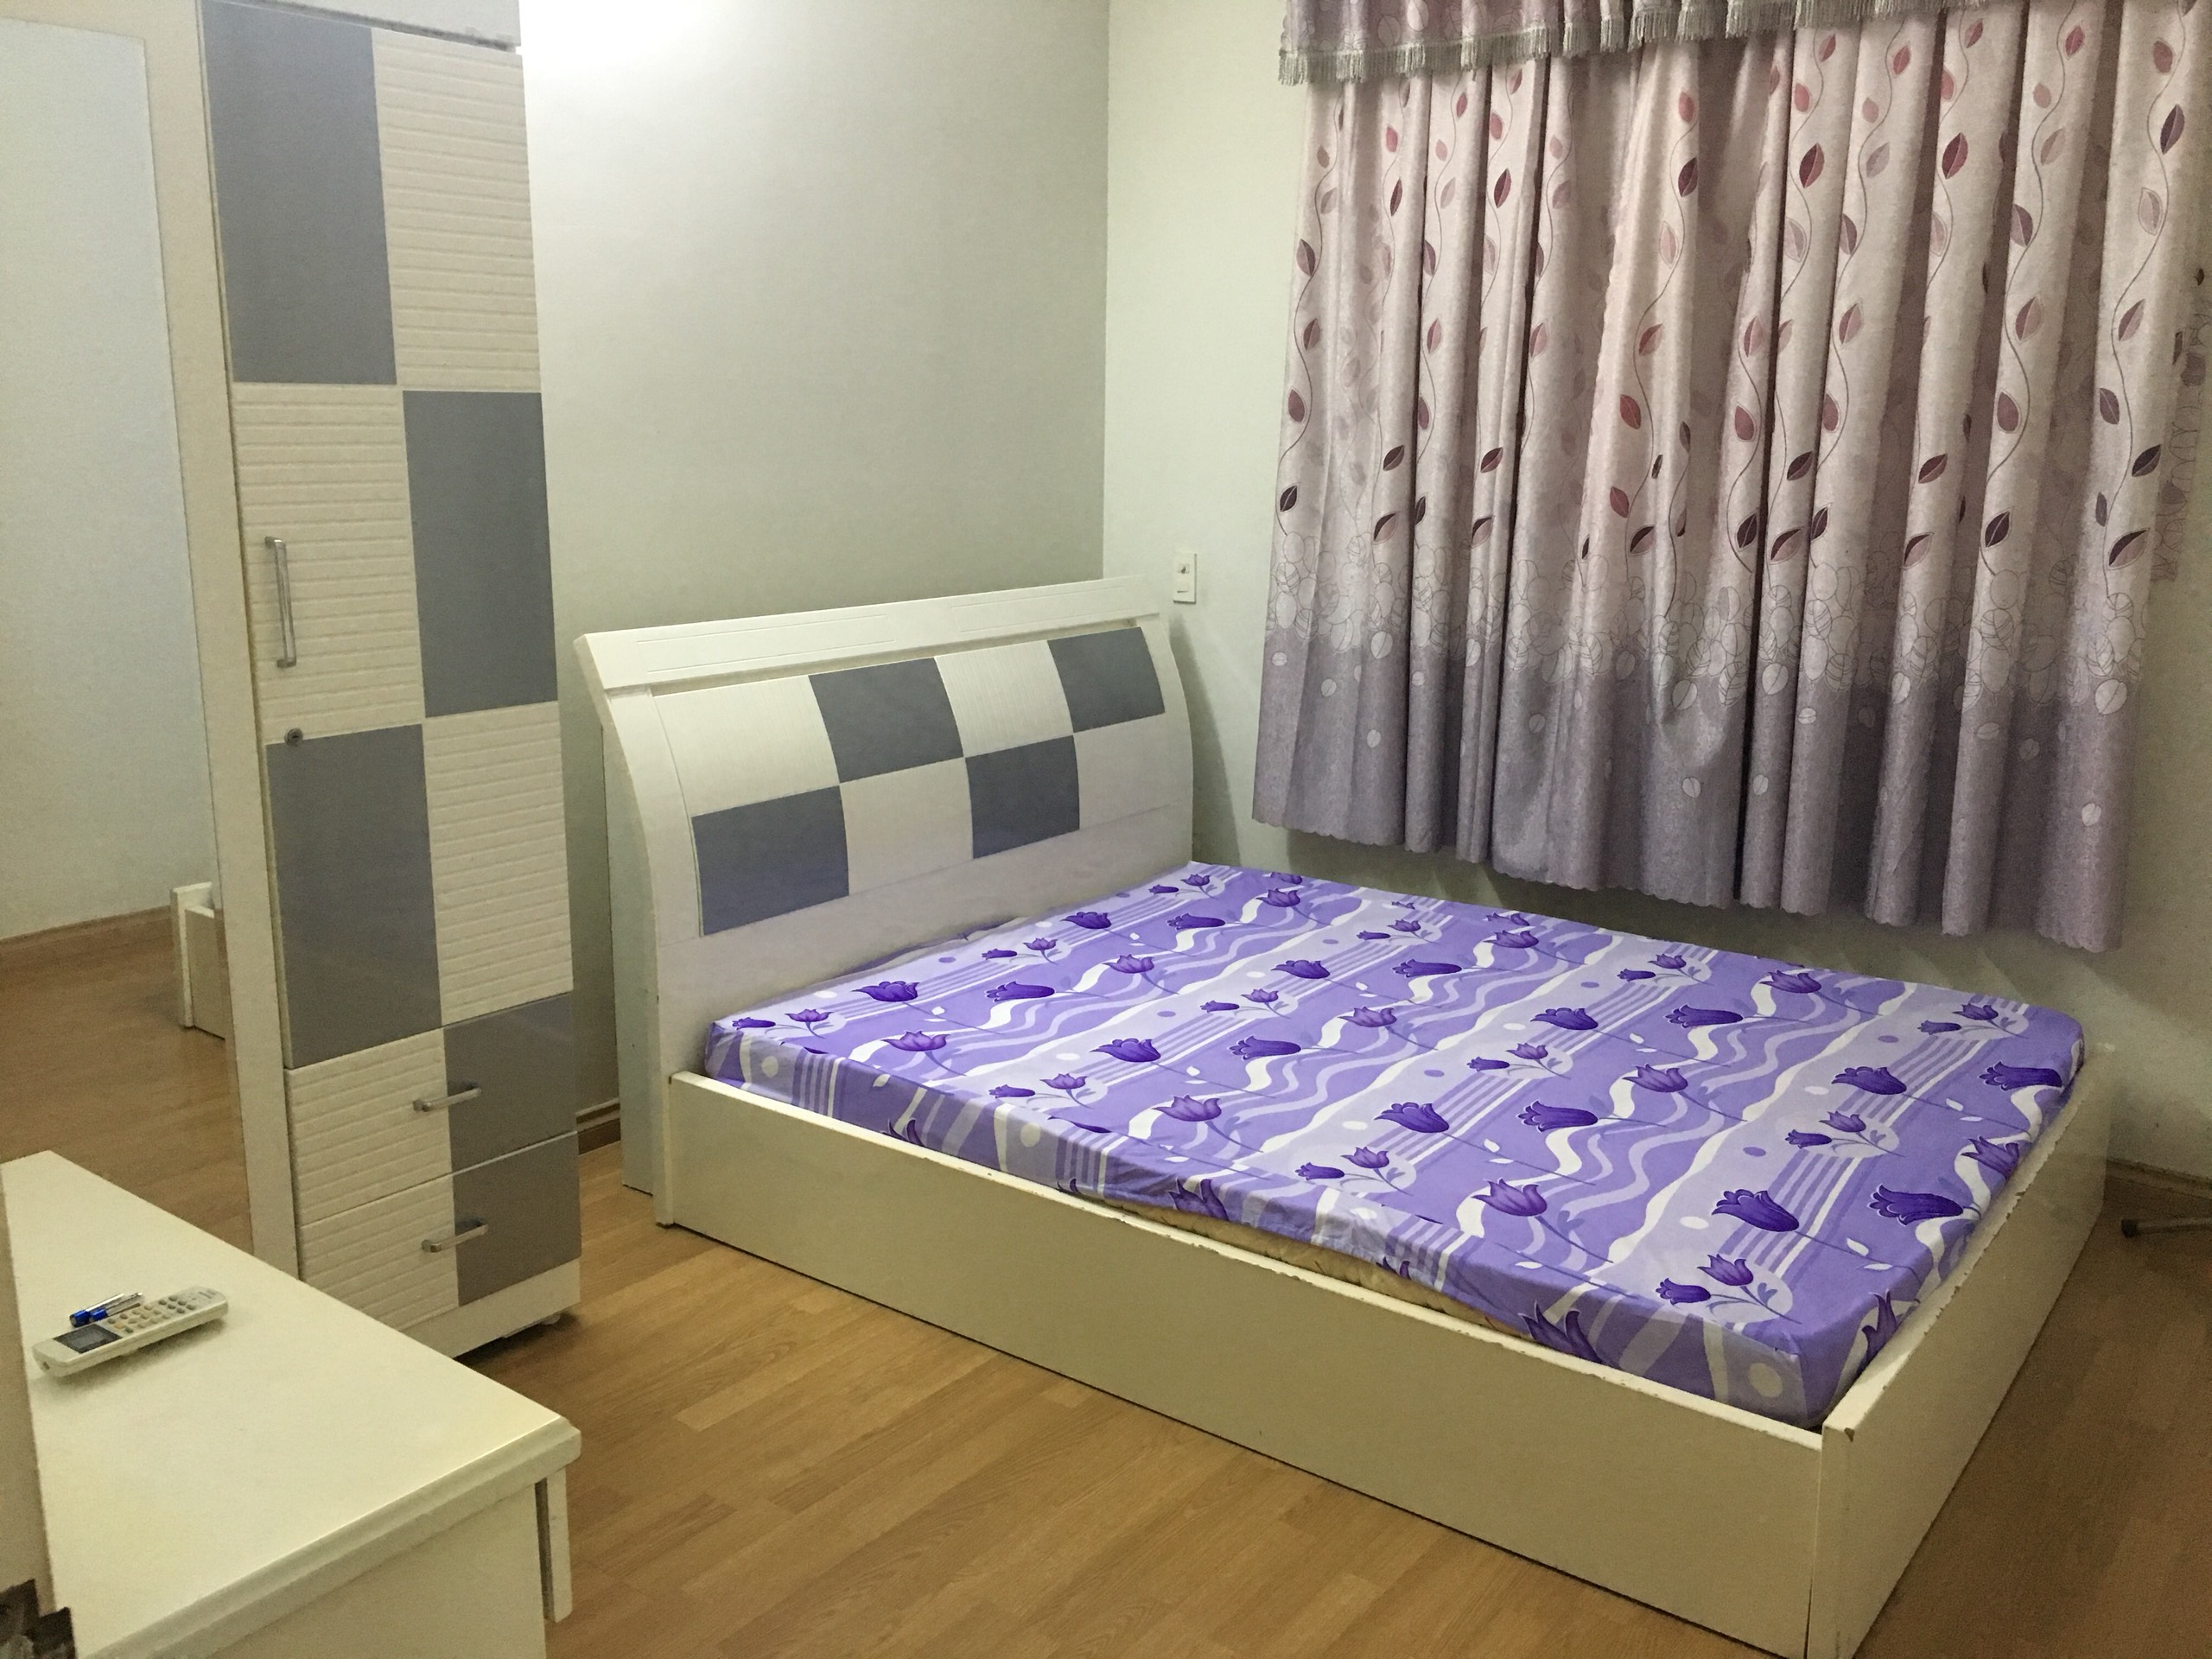 Cần bán căn hộ chung cư Đồng Diều, đường Cao lỗ, P4 Quận 8, lầu 1, DT 75m2, 2 phòng ngủ